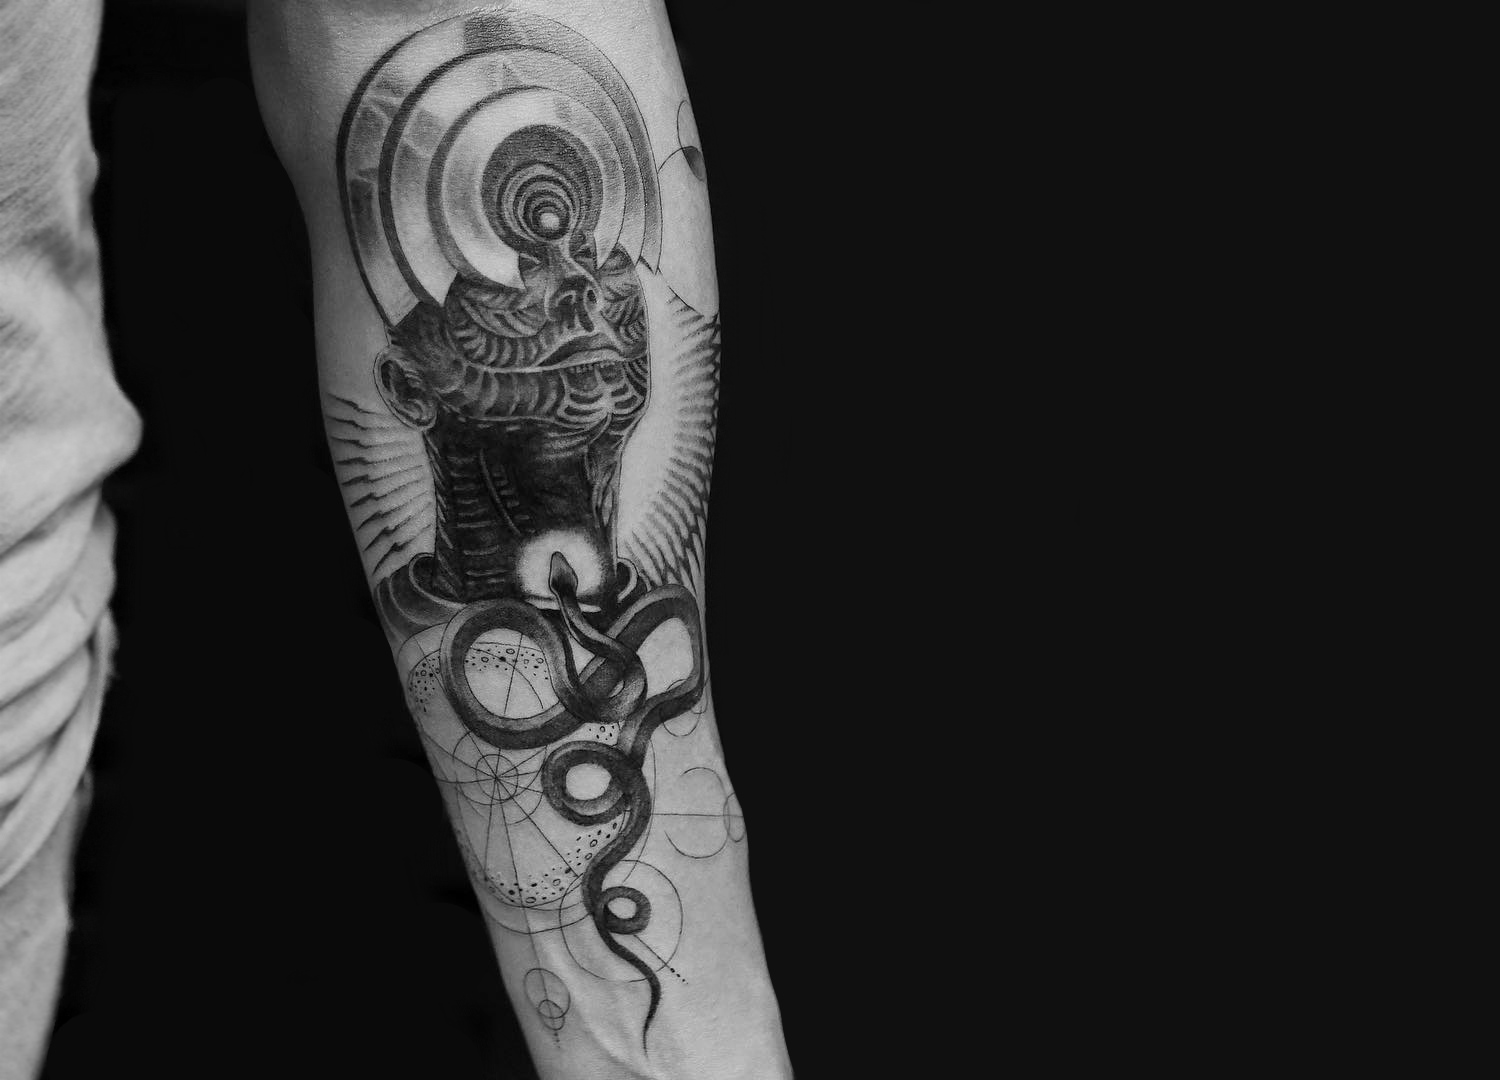 Alex Grey inspired tattoo by Balazs Bercsenyi of Bang Bang Tattoos New York